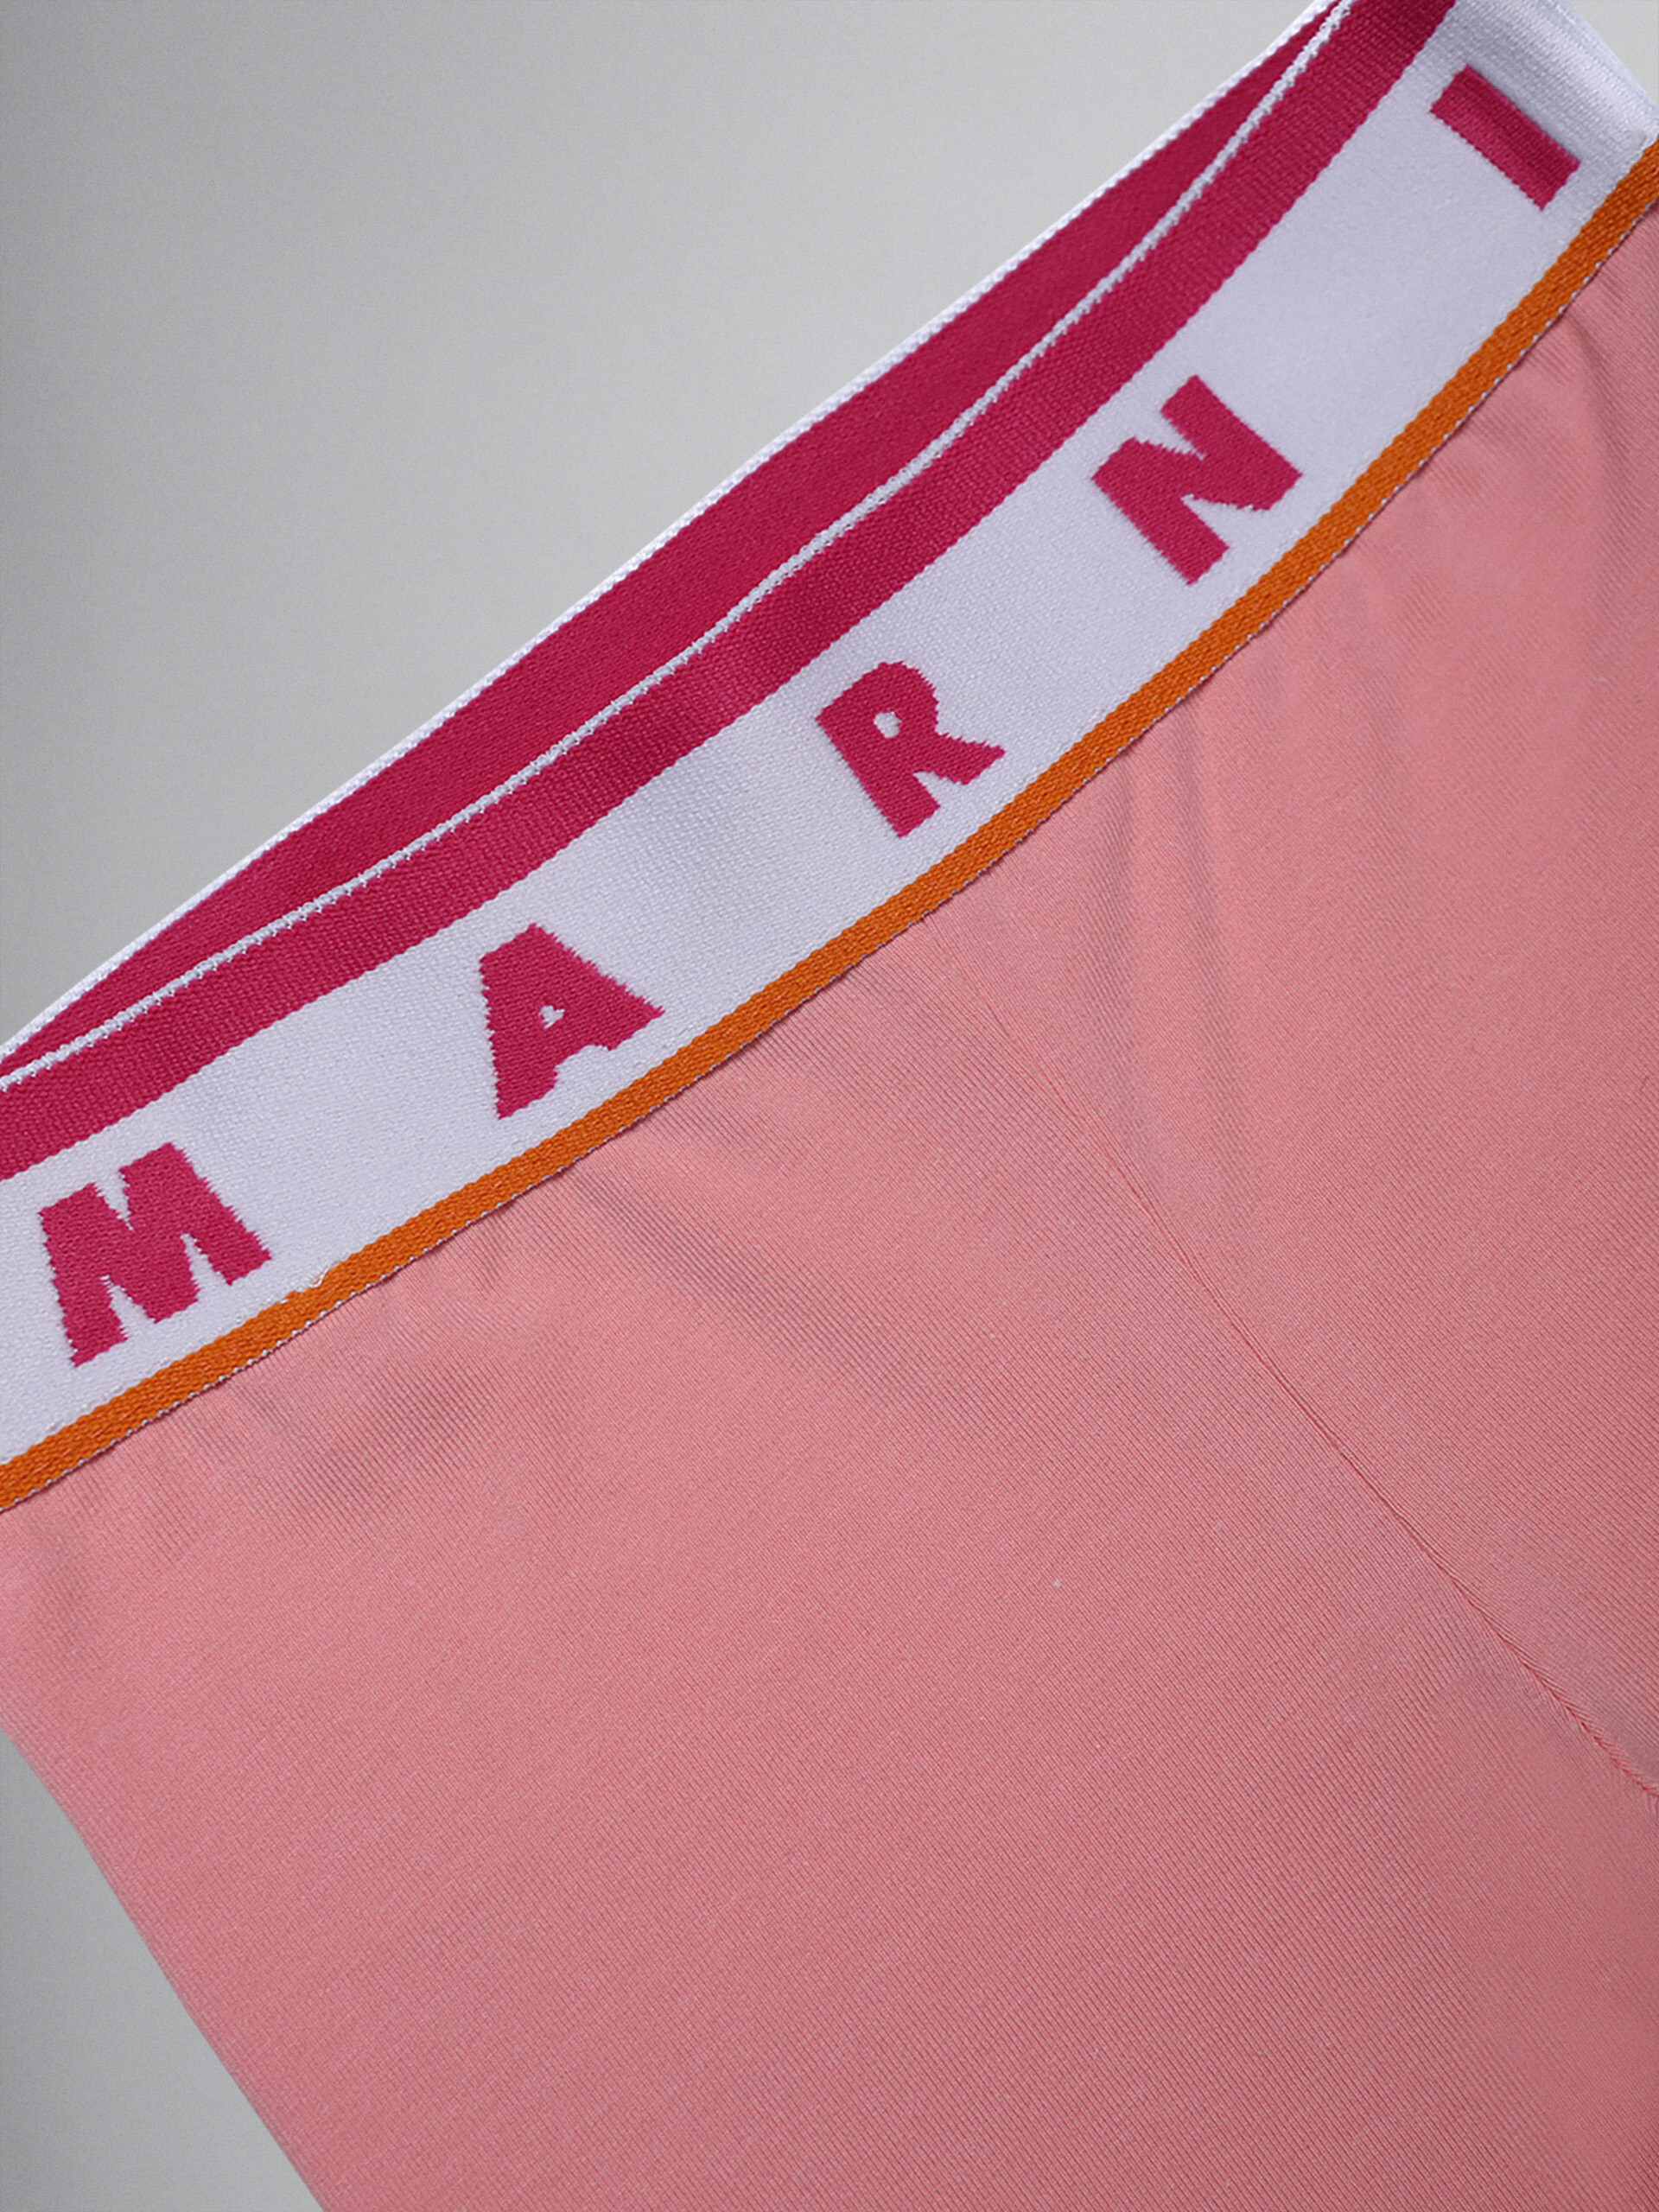 Leggings de jersey elástico rosa con logotipo - Pantalones - Image 3